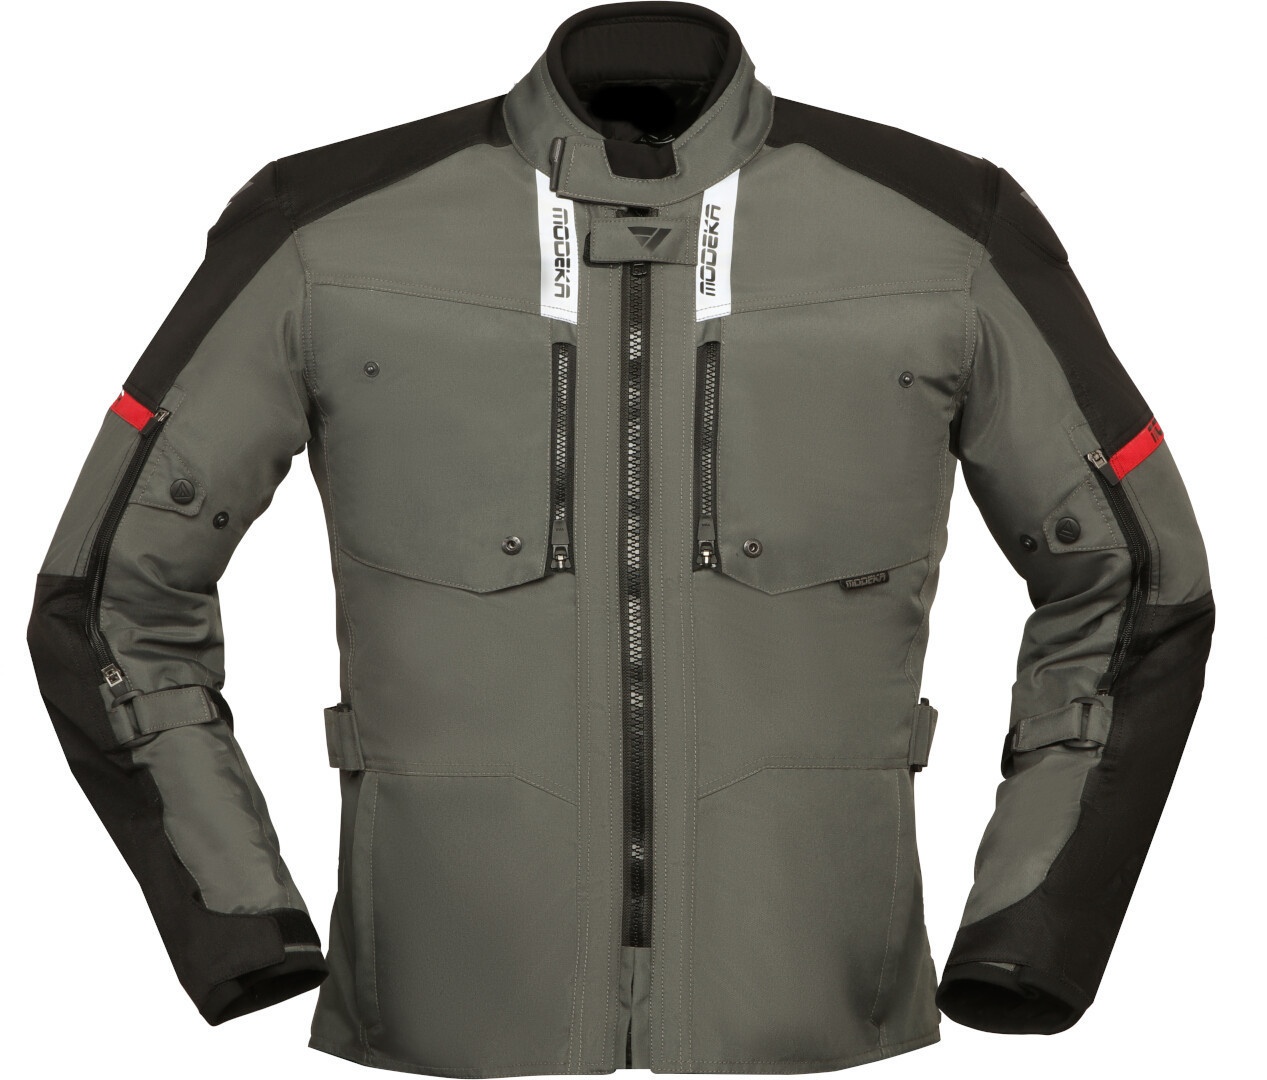 Modeka Raegis Motorfiets textiel jas, zwart-grijs, L